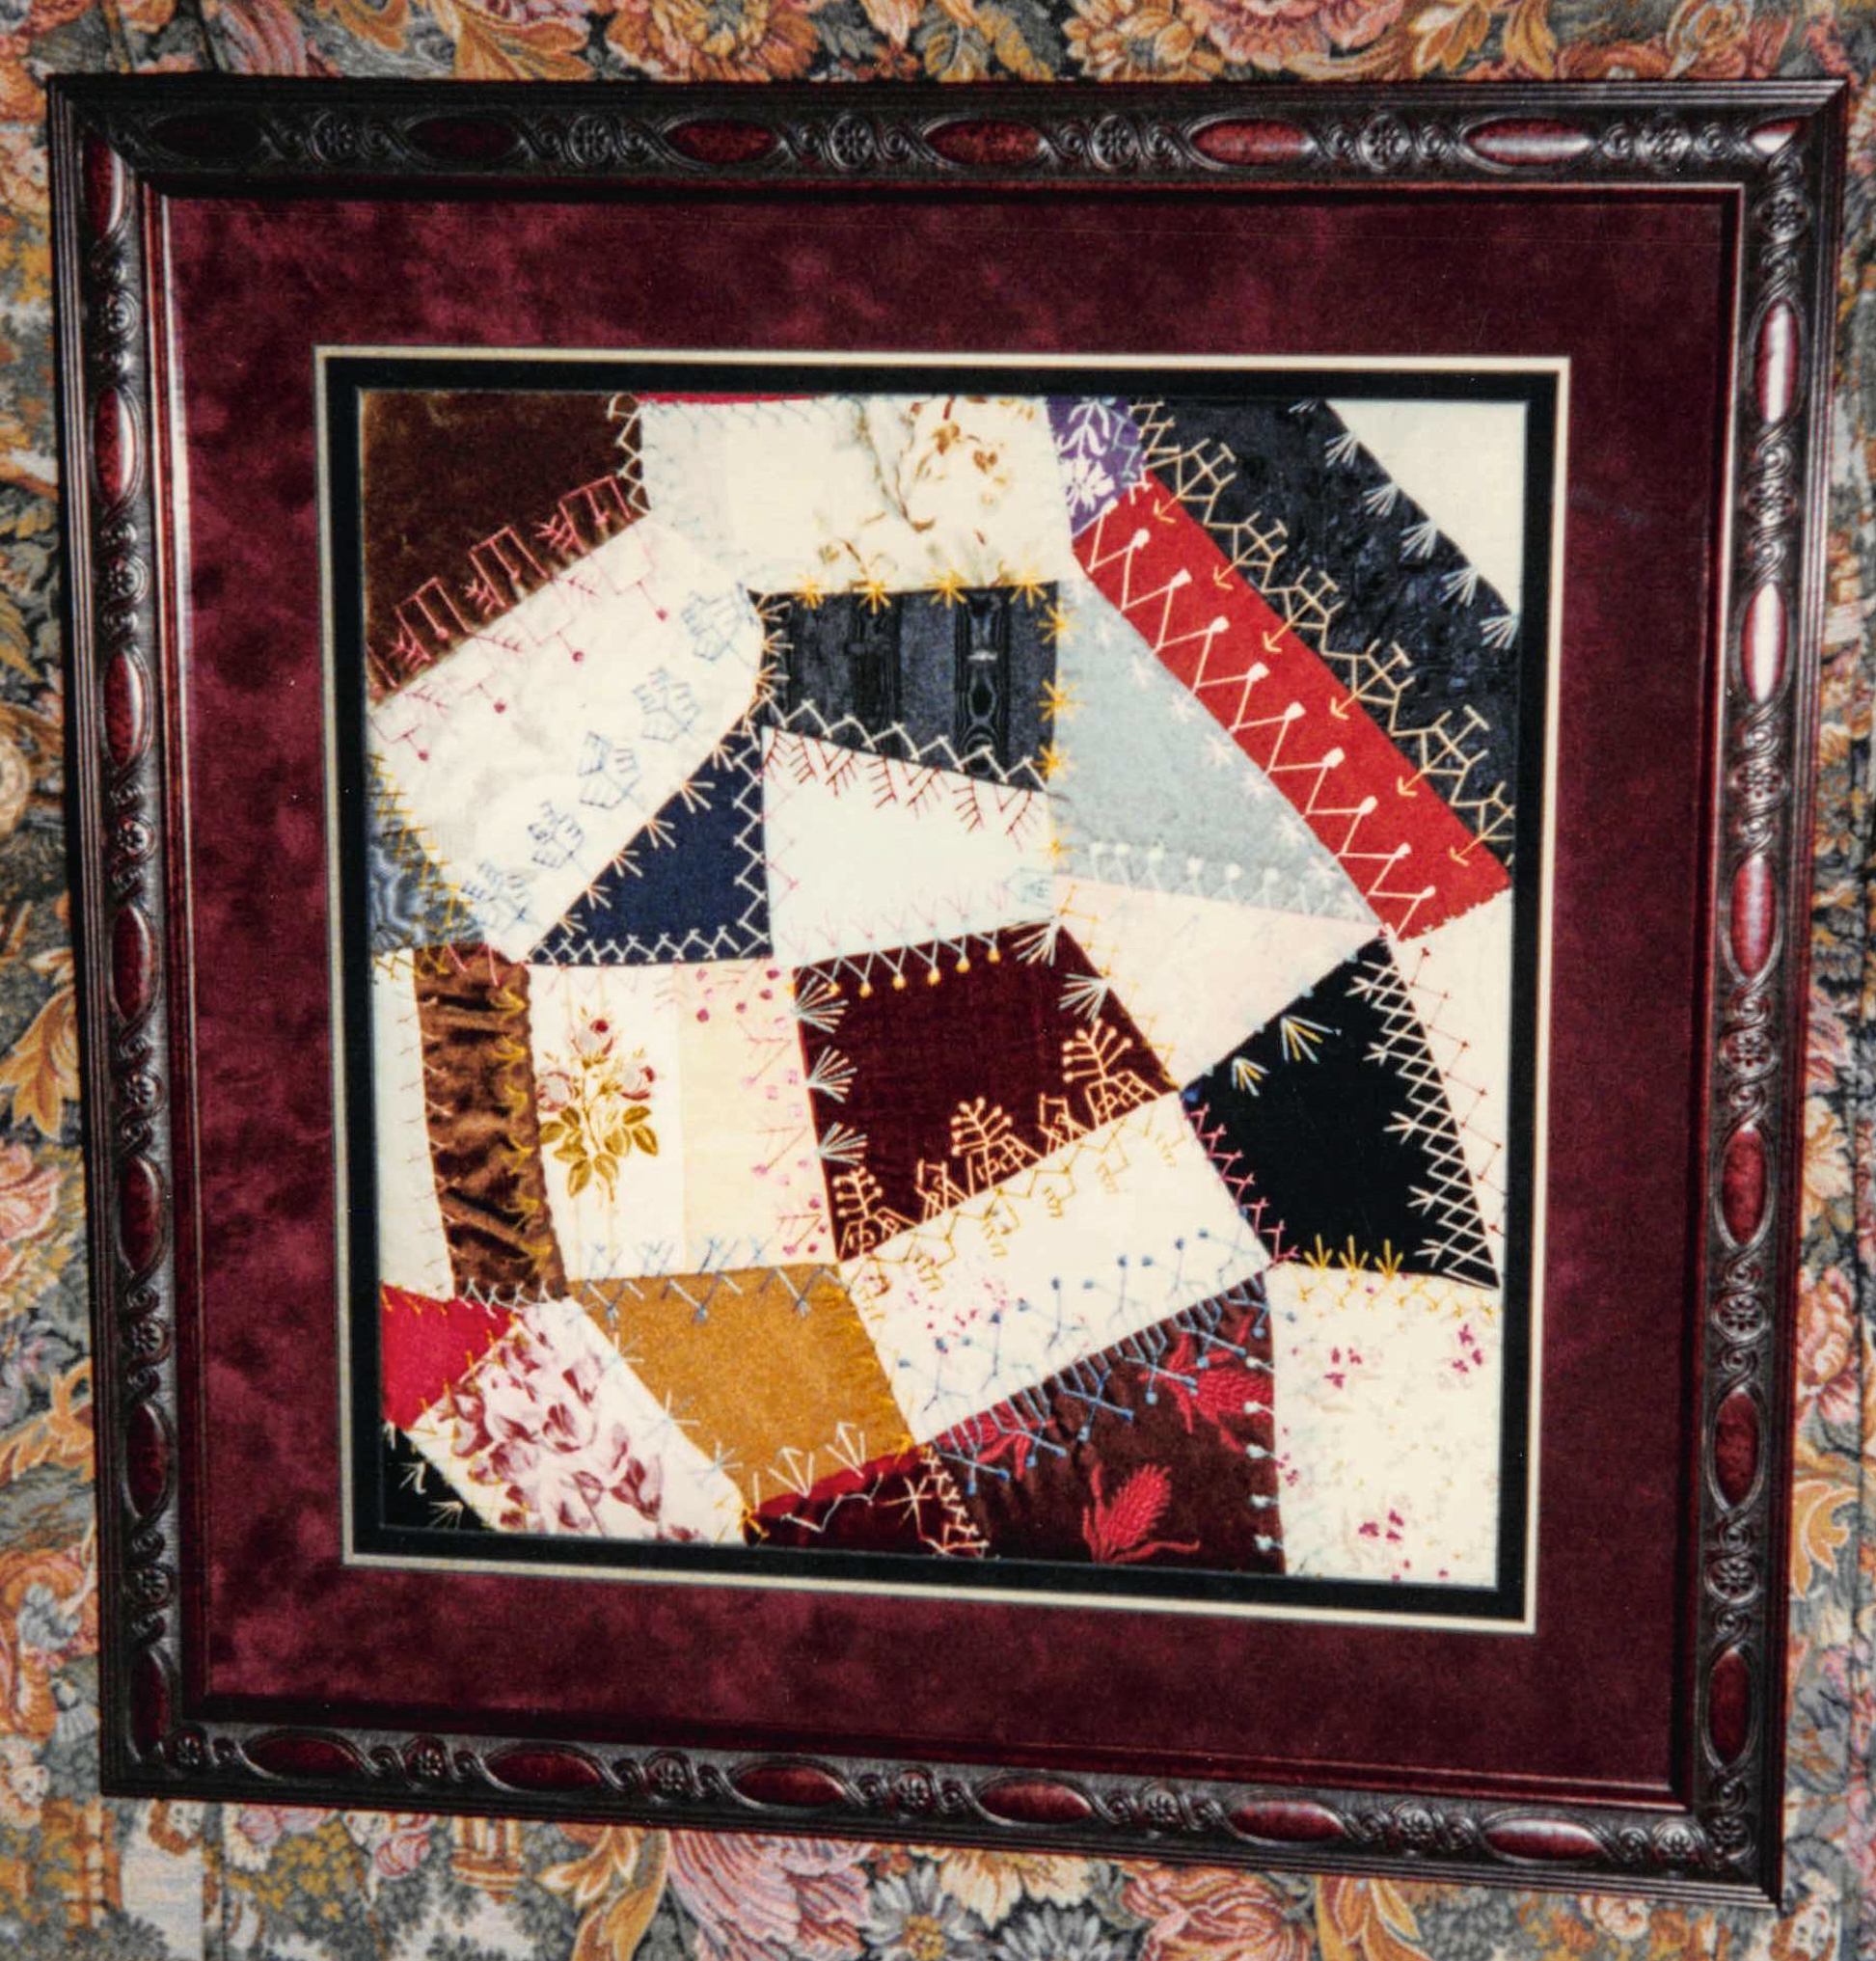 Framed portion of vintage embroidered Crazy quilt